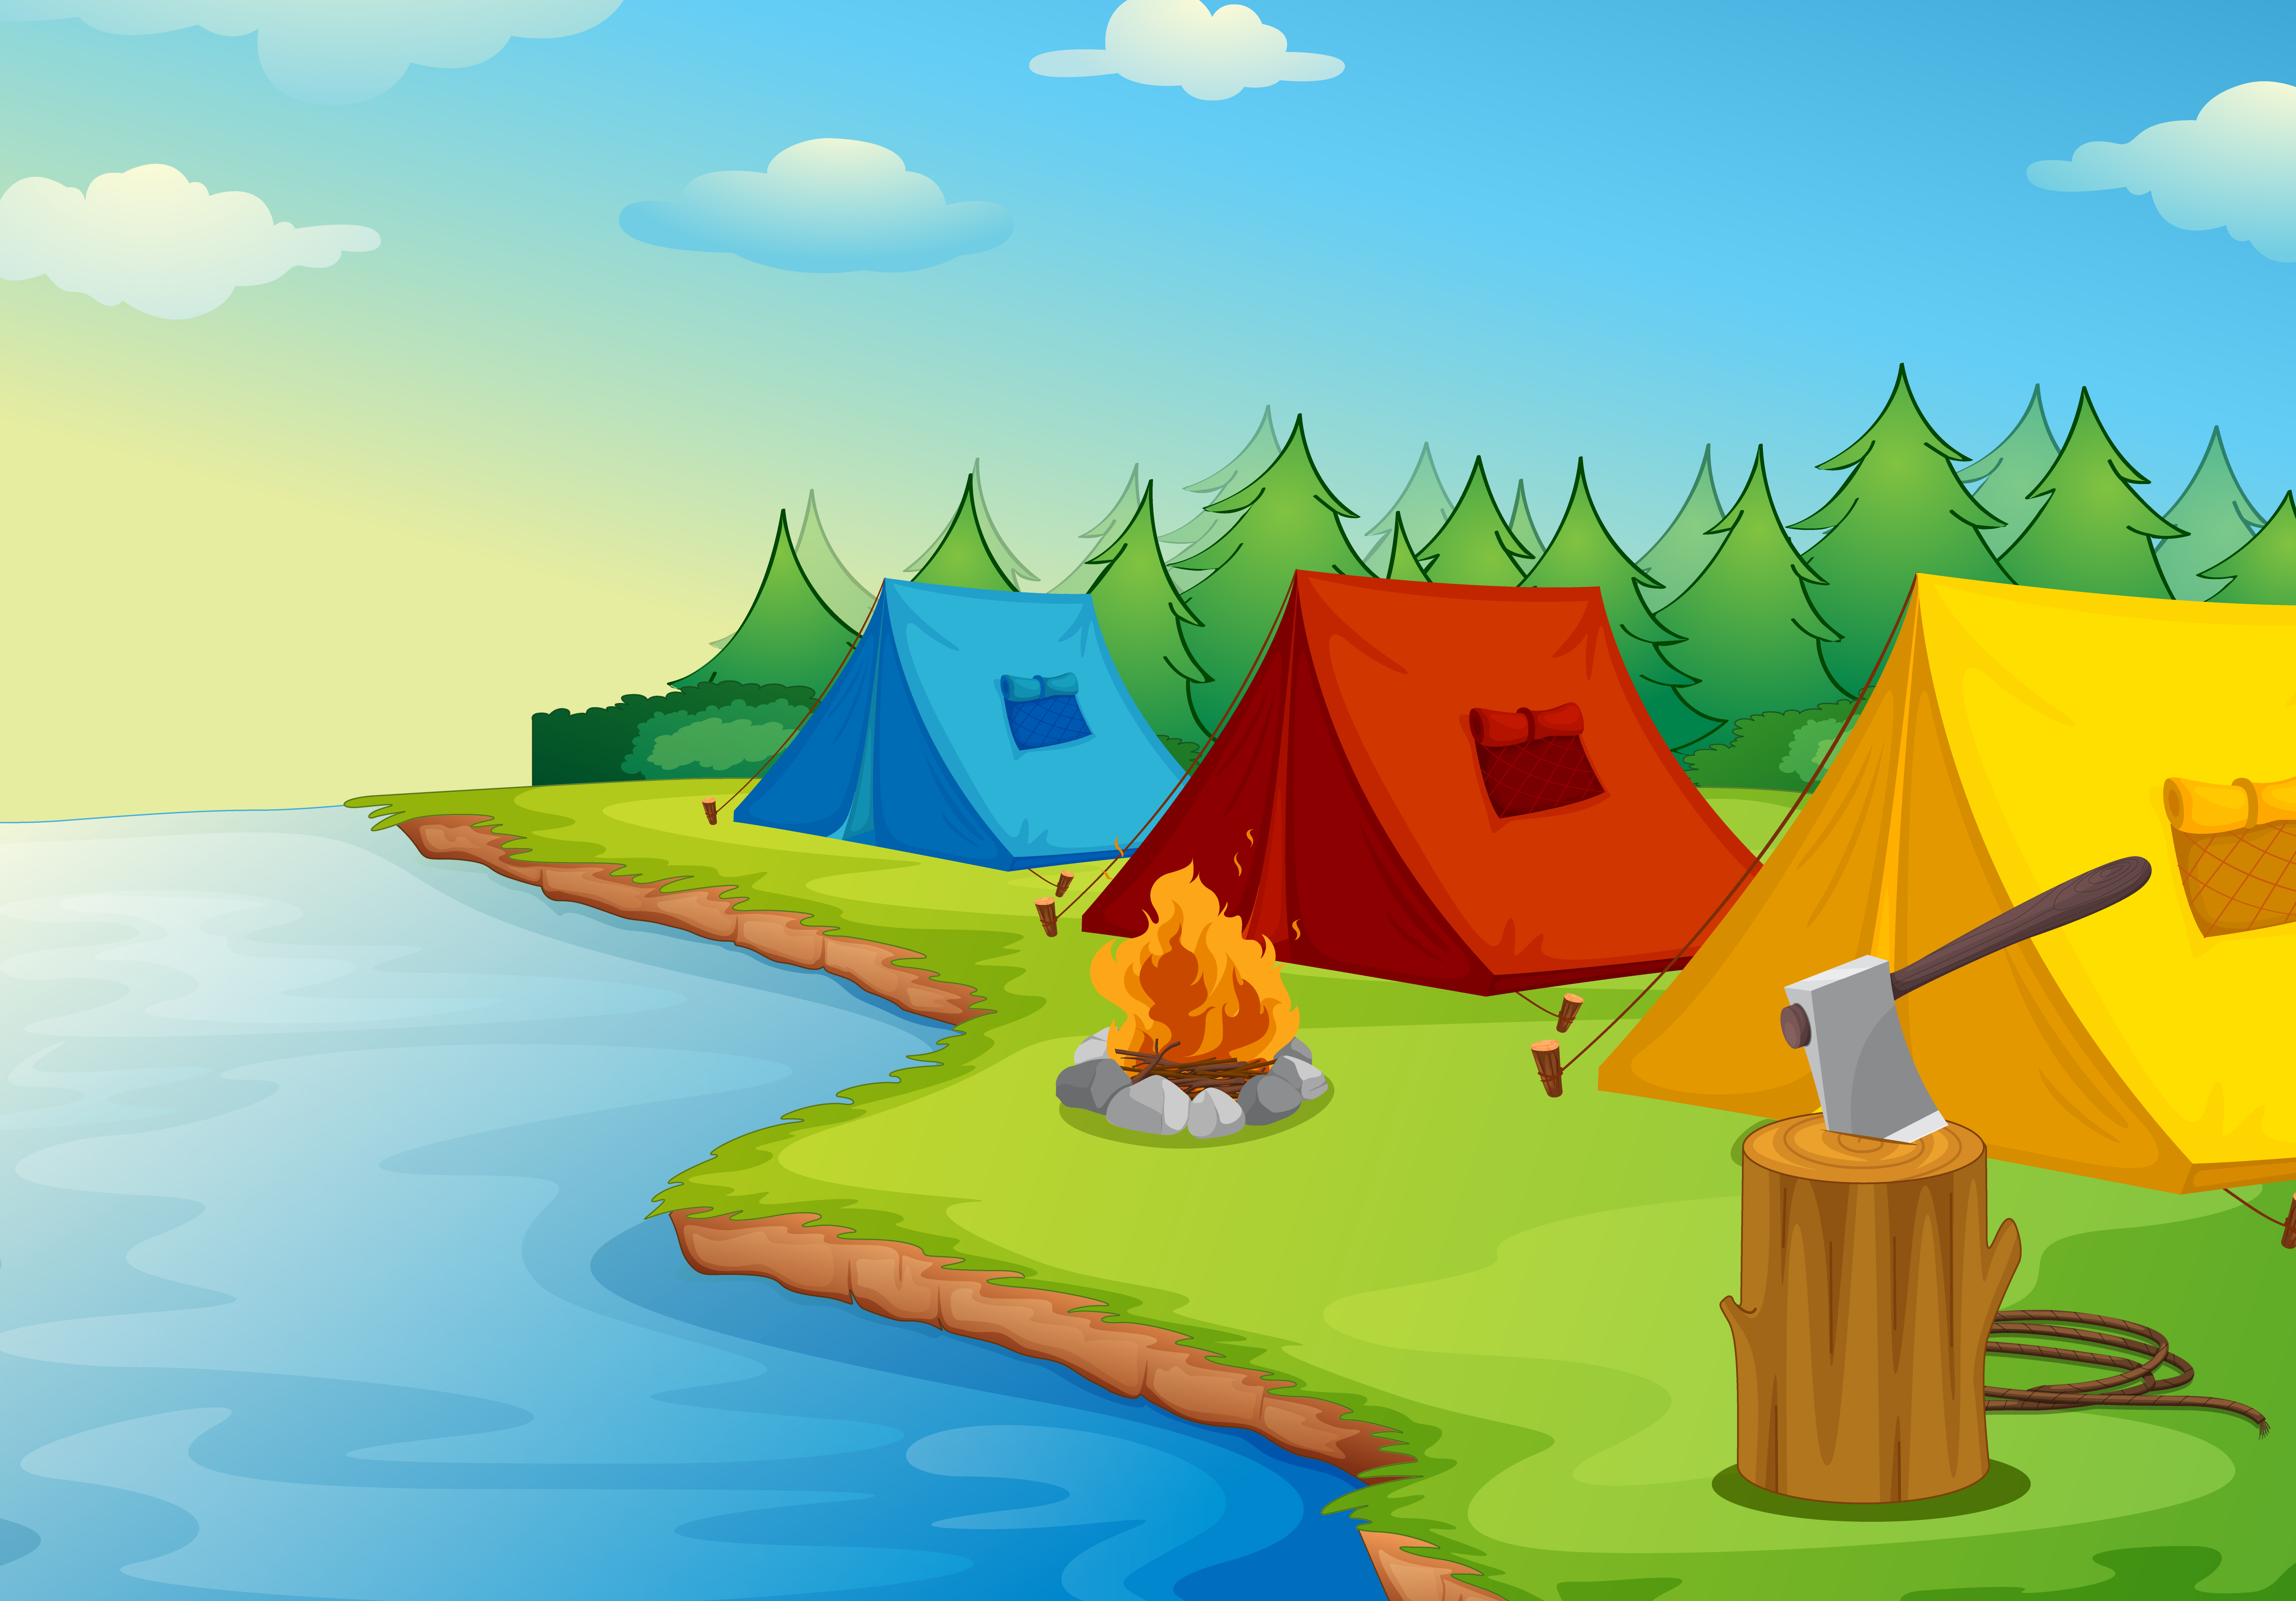 Camping Download Free Vectors Clipart Graphics & Vector Art